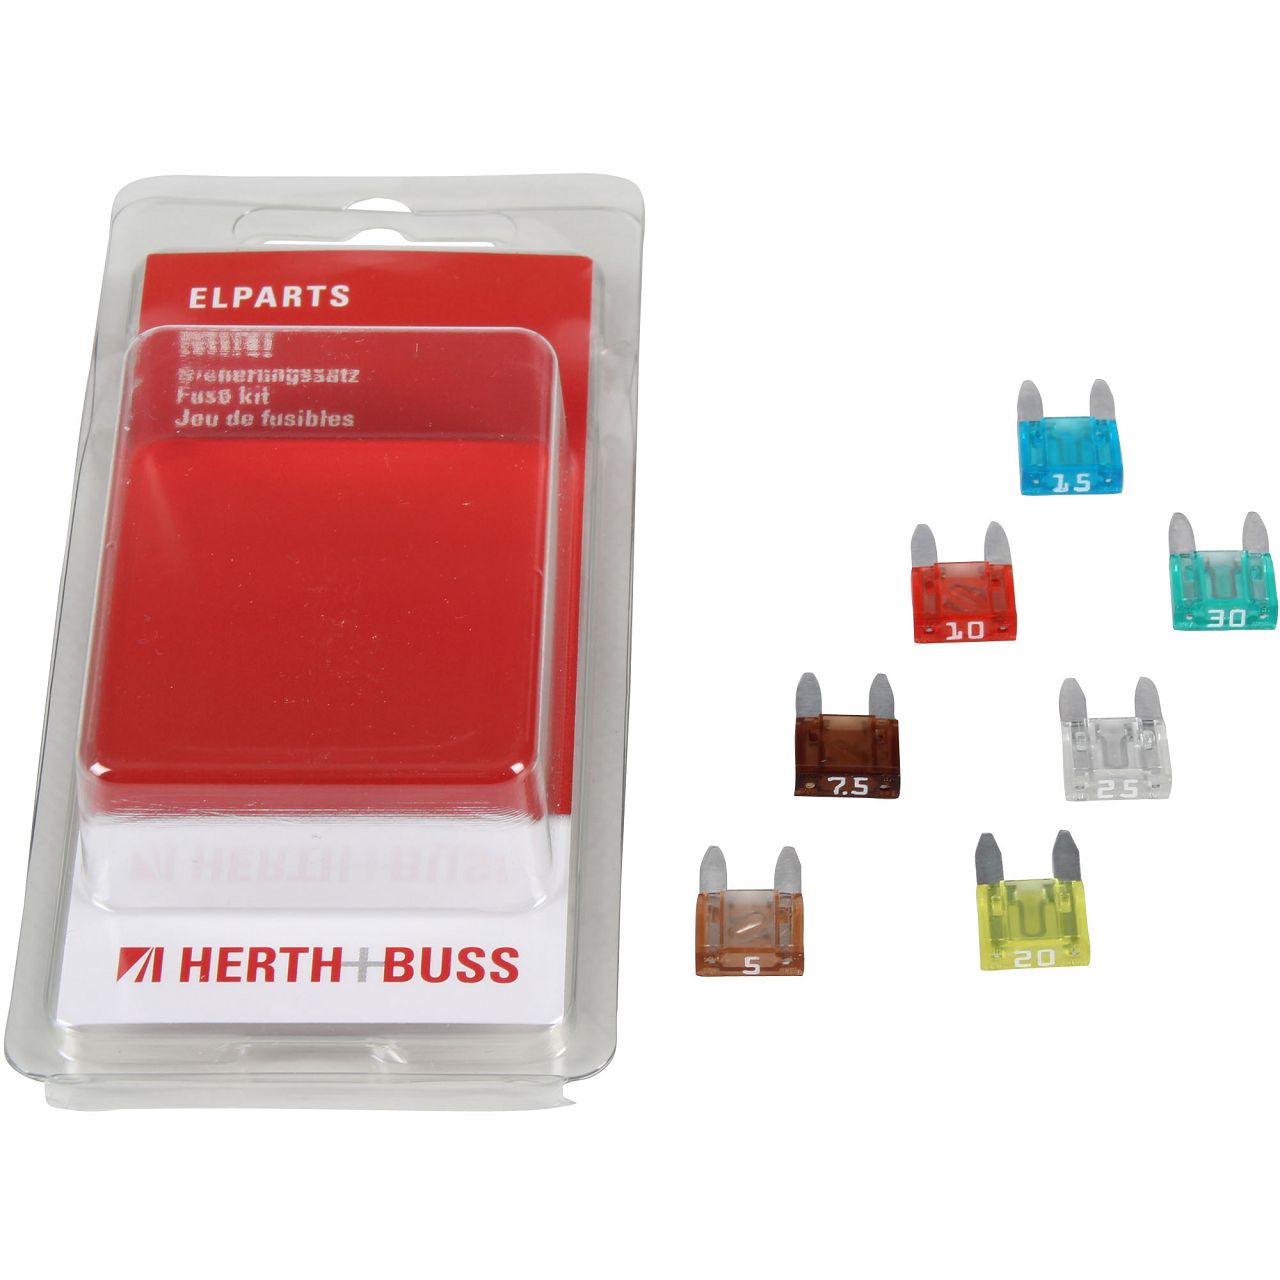 HERTH+BUSS ELPARTS Sicherungssatz MINI-Flachstecksicherung 5A-30A bis 32V